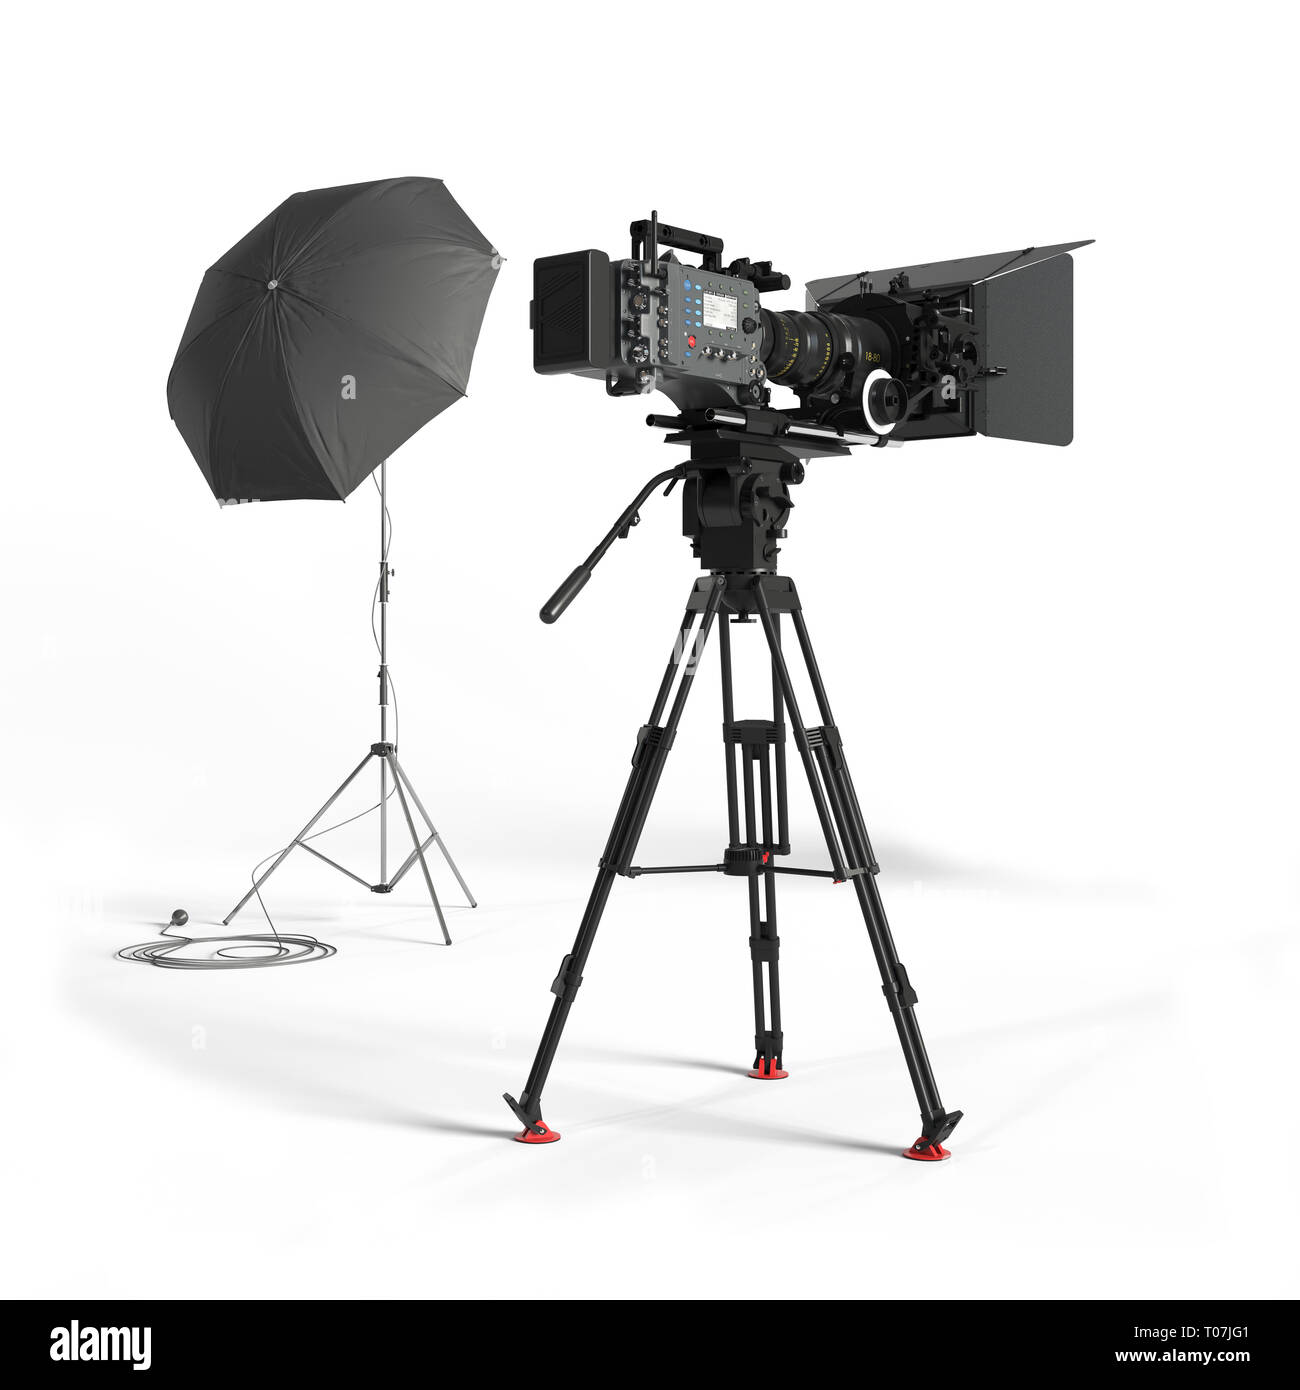 L'équipement de studio photo rendu 3d illustration isolé Banque D'Images